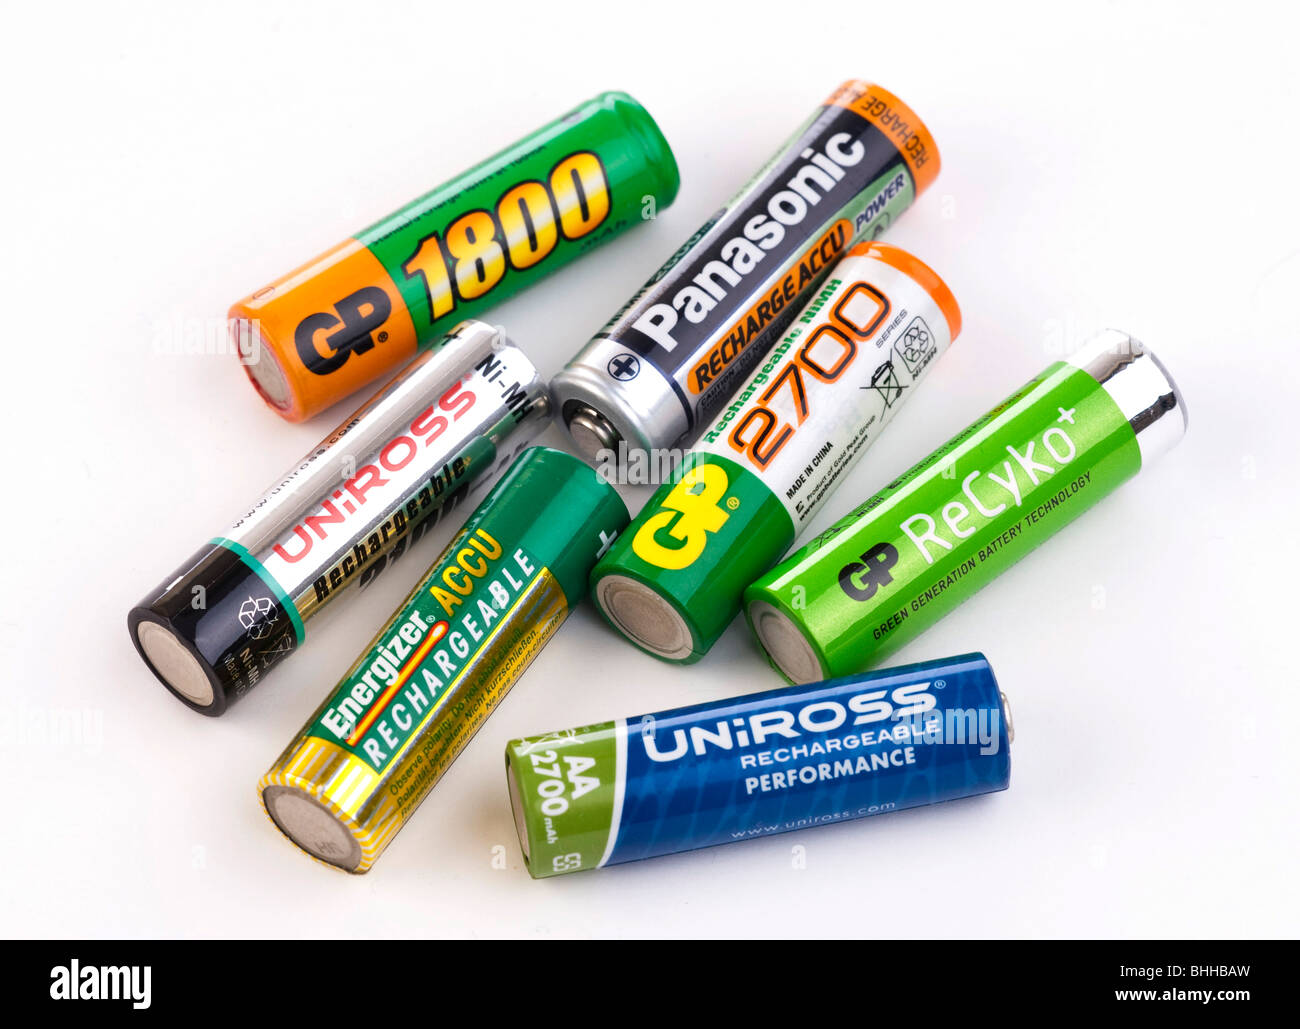 1 5 volt battery immagini e fotografie stock ad alta risoluzione - Alamy